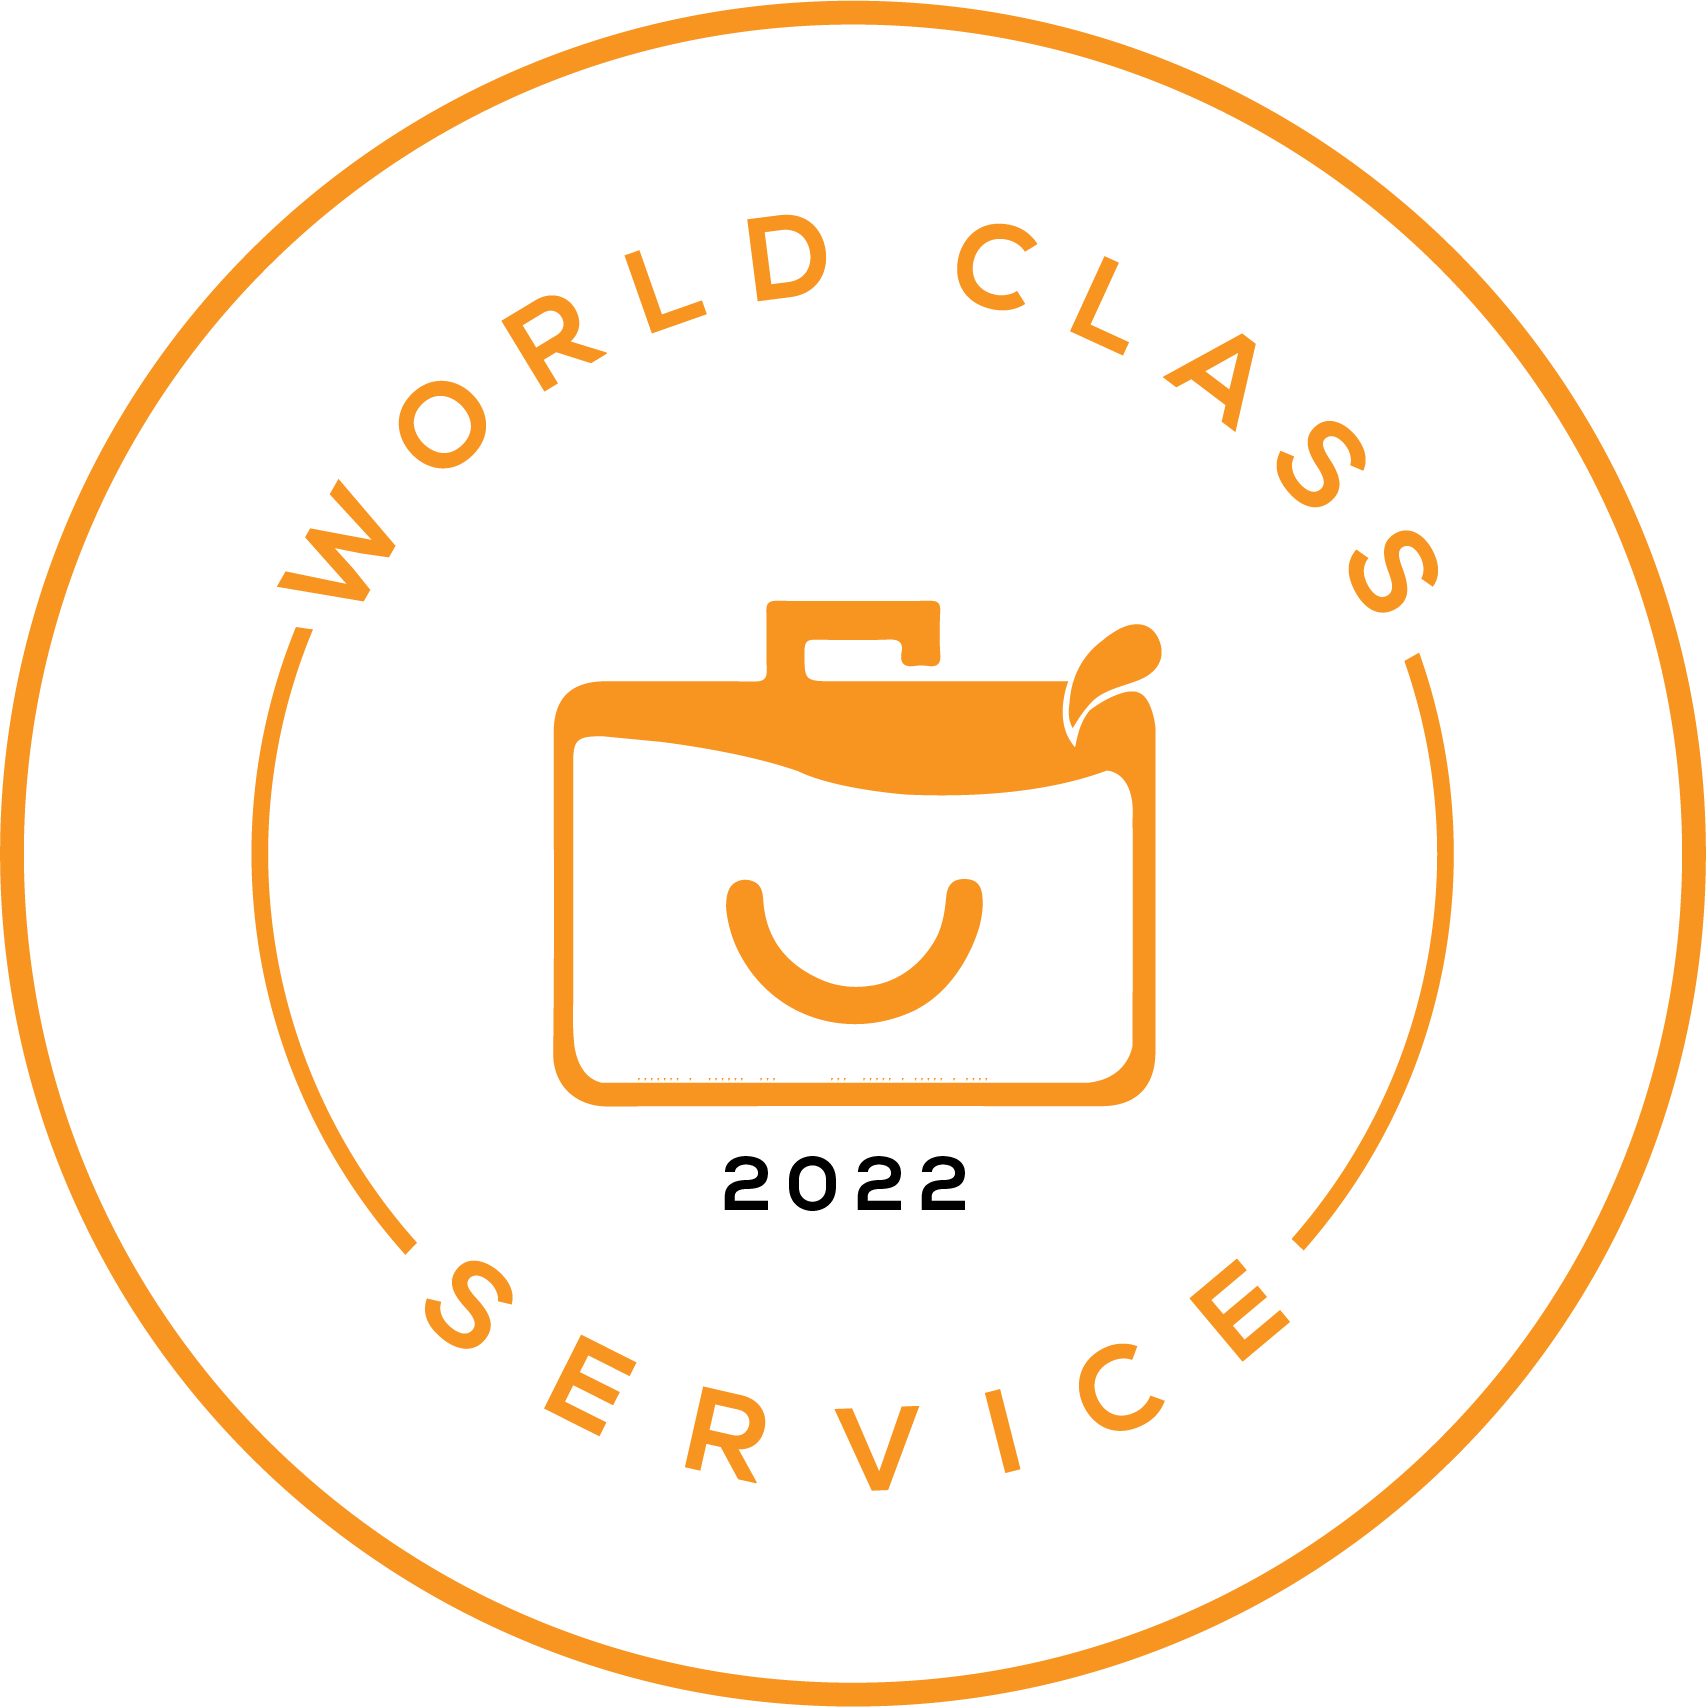 World Class Service Award - CEOJucie